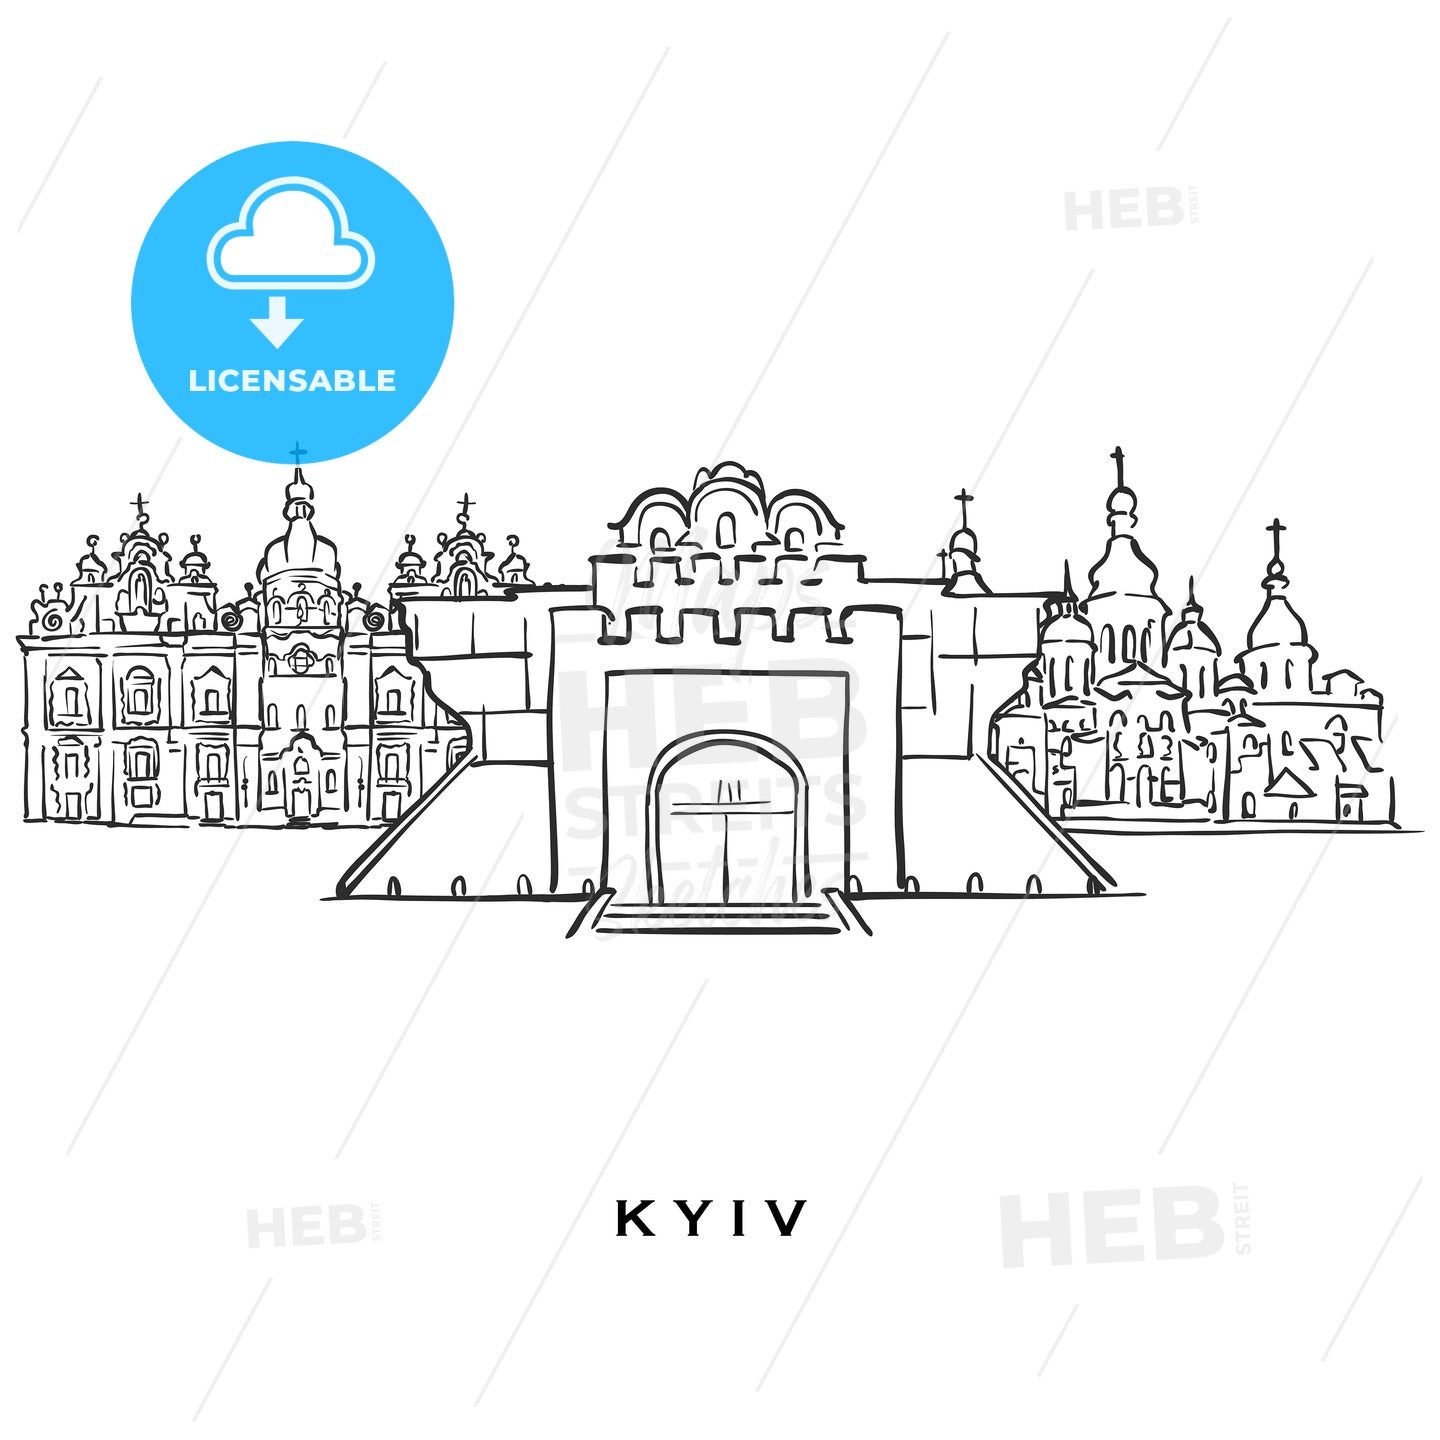 Kyiv Ukraine famous architecture – instant download